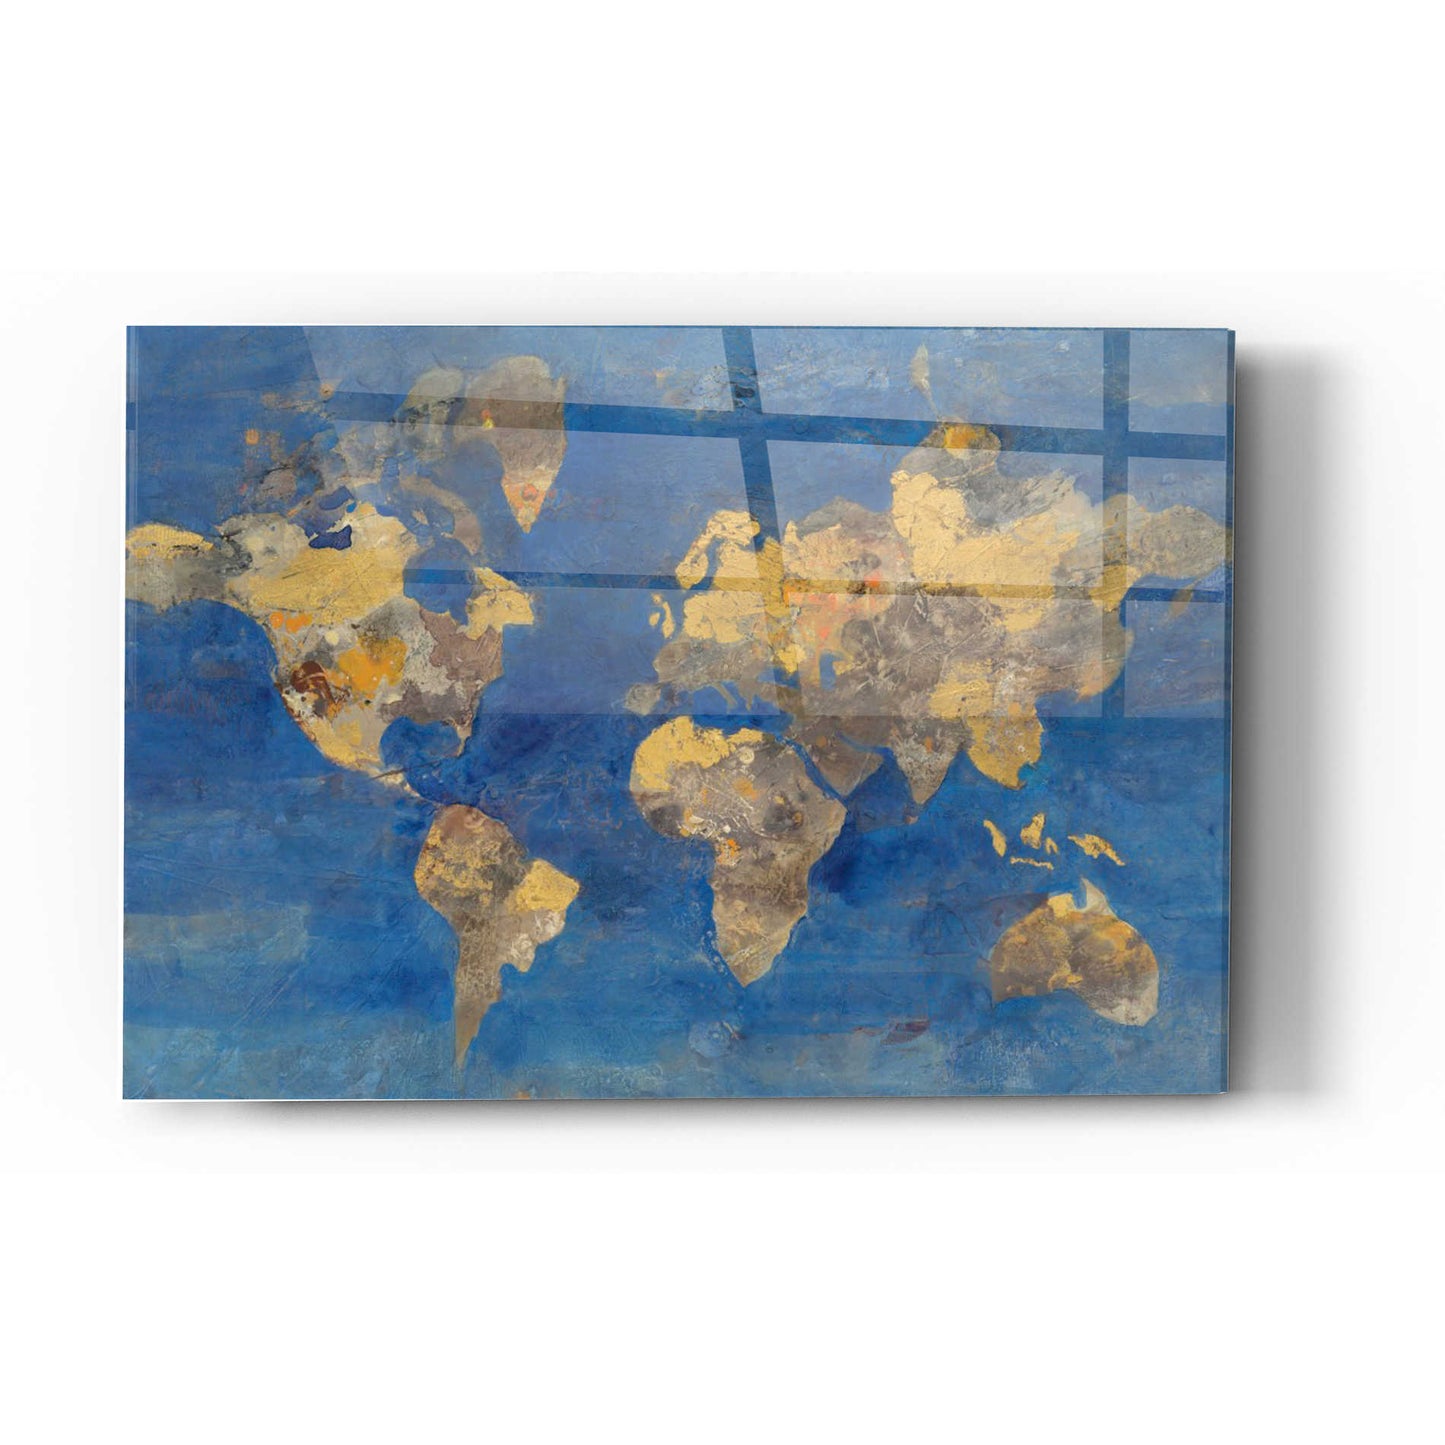 Epic Art 'Blue World' by Albena Hristova, Acrylic Glass Wall Art,16x24